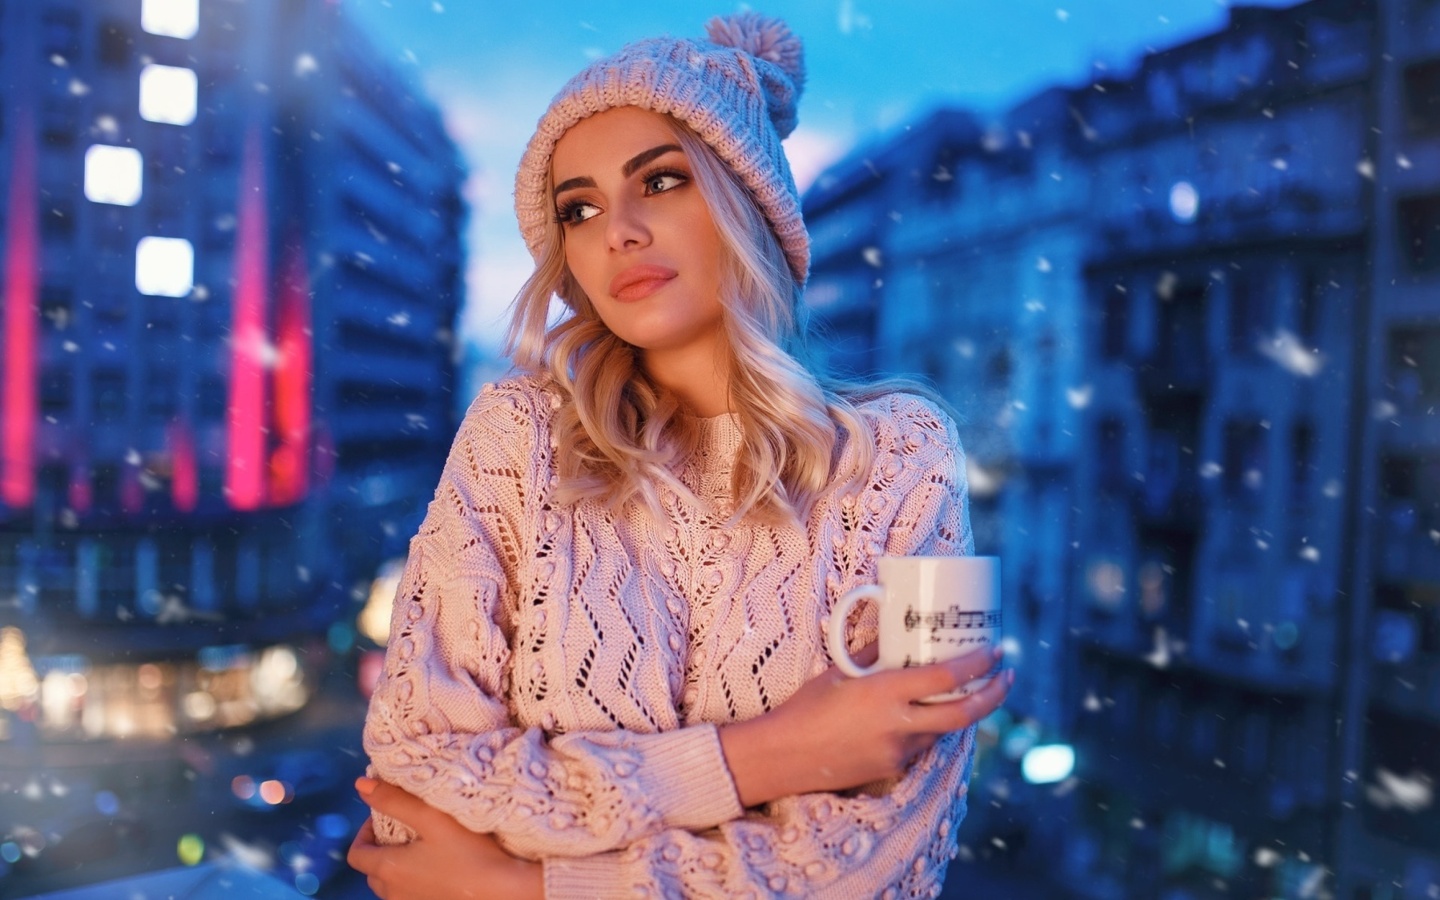 Winter stylish woman wallpaper 1440x900